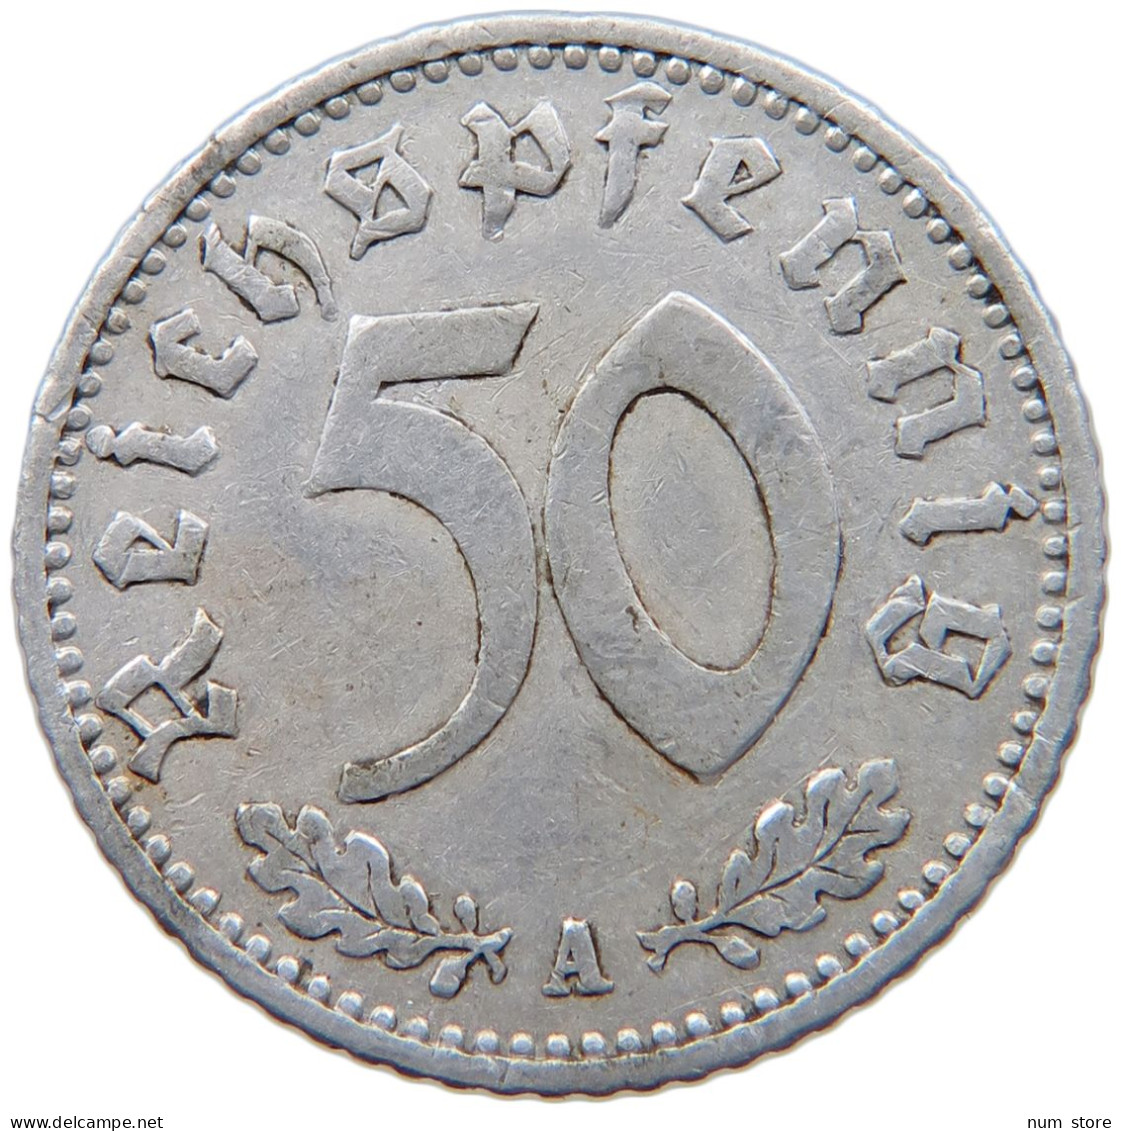 GERMANY 50 REICHSPFENNIG 1940 A #s089 0503 - 50 Reichspfennig